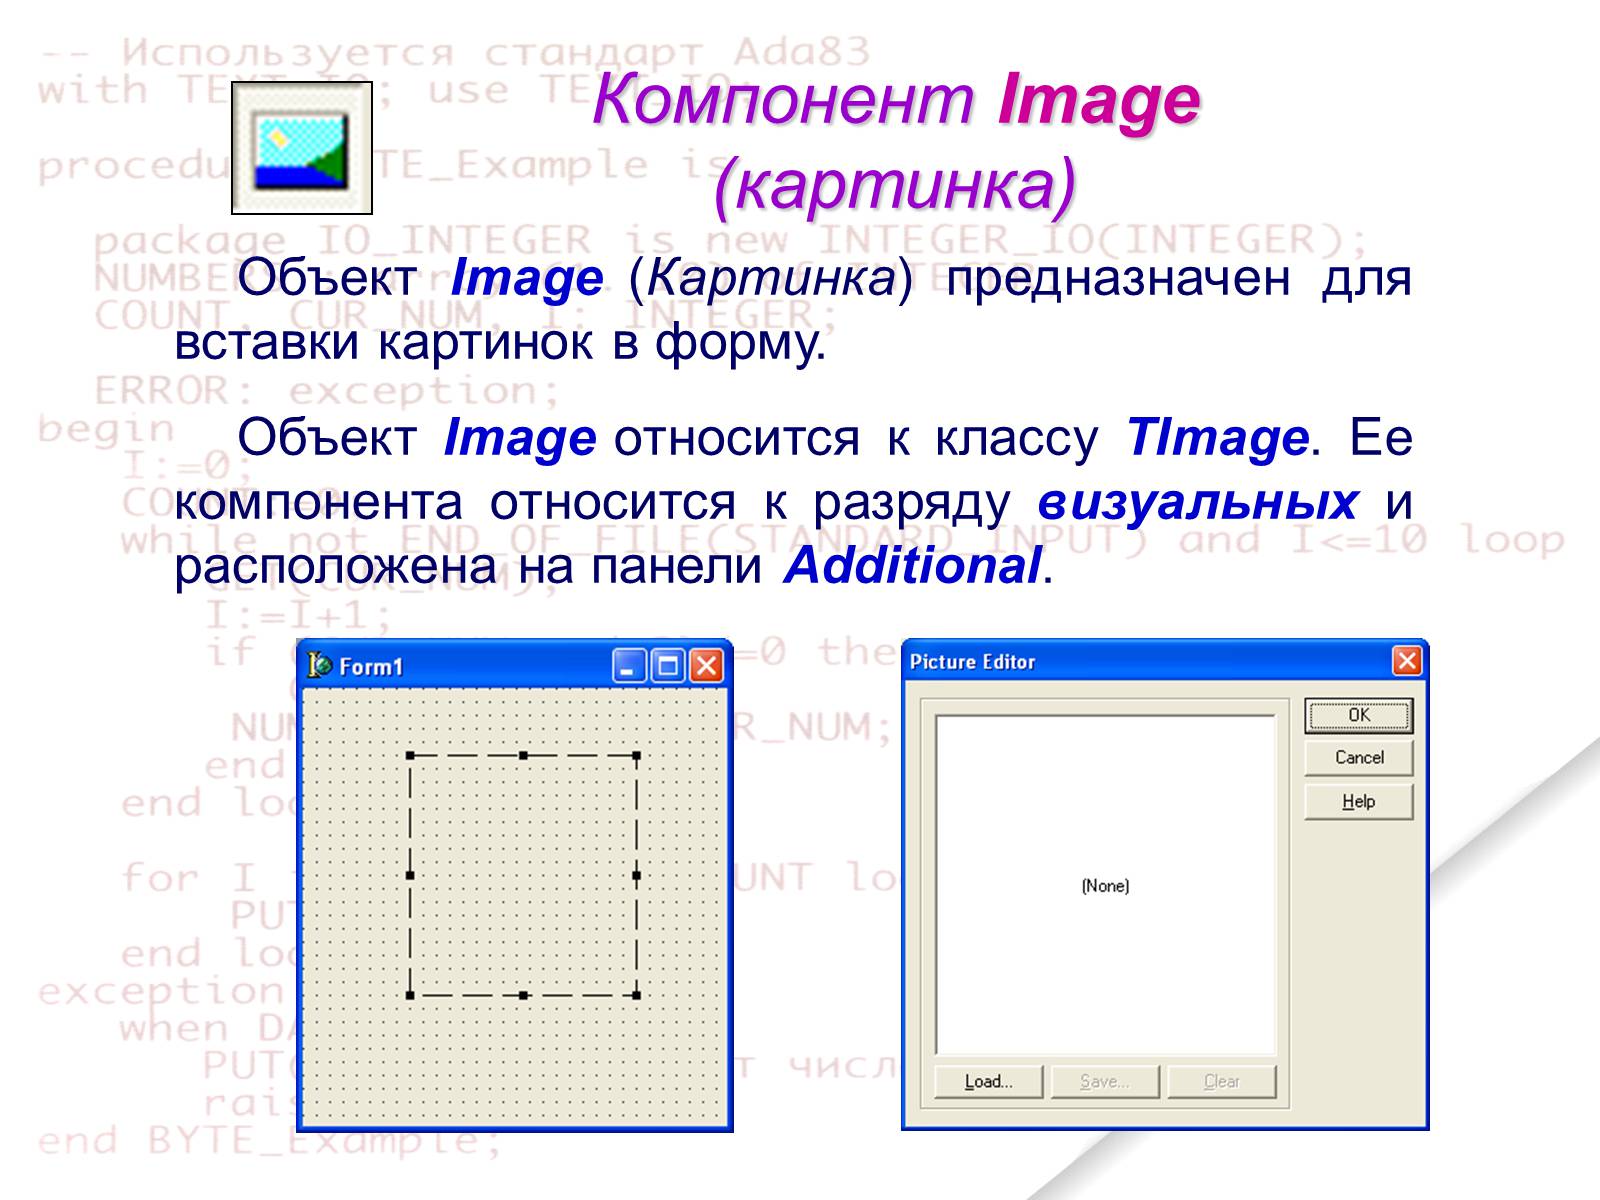 Imaging component. Картинки компонентов в Делфи. Image в Делфи 7. Как расположить компонент image в Делфи. Картинка- (вставка графического объекта) для презентации.